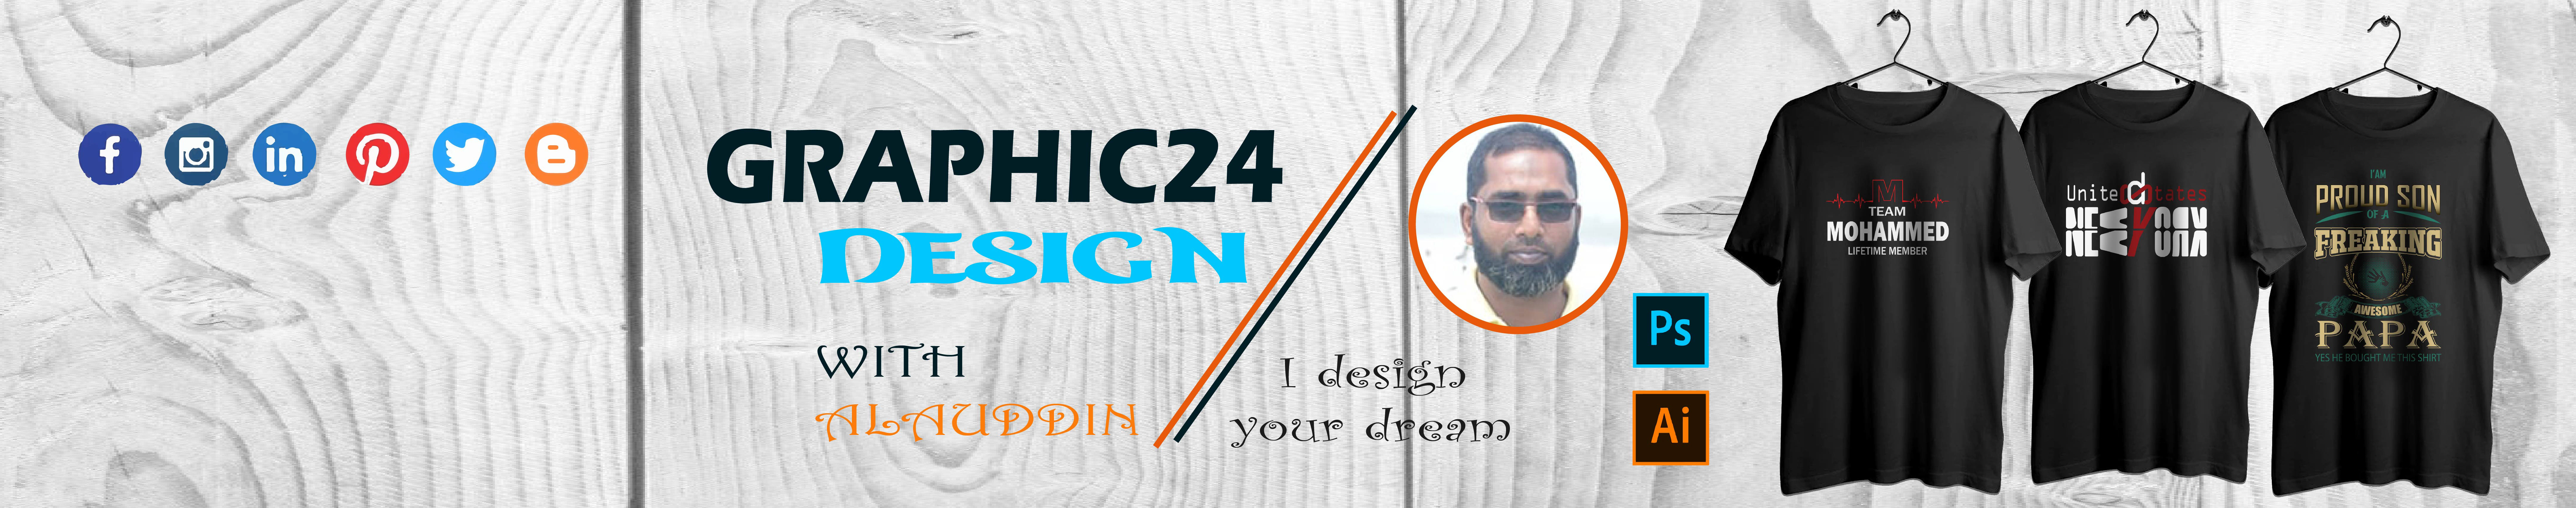 Alauddin Graphic 24's profile banner